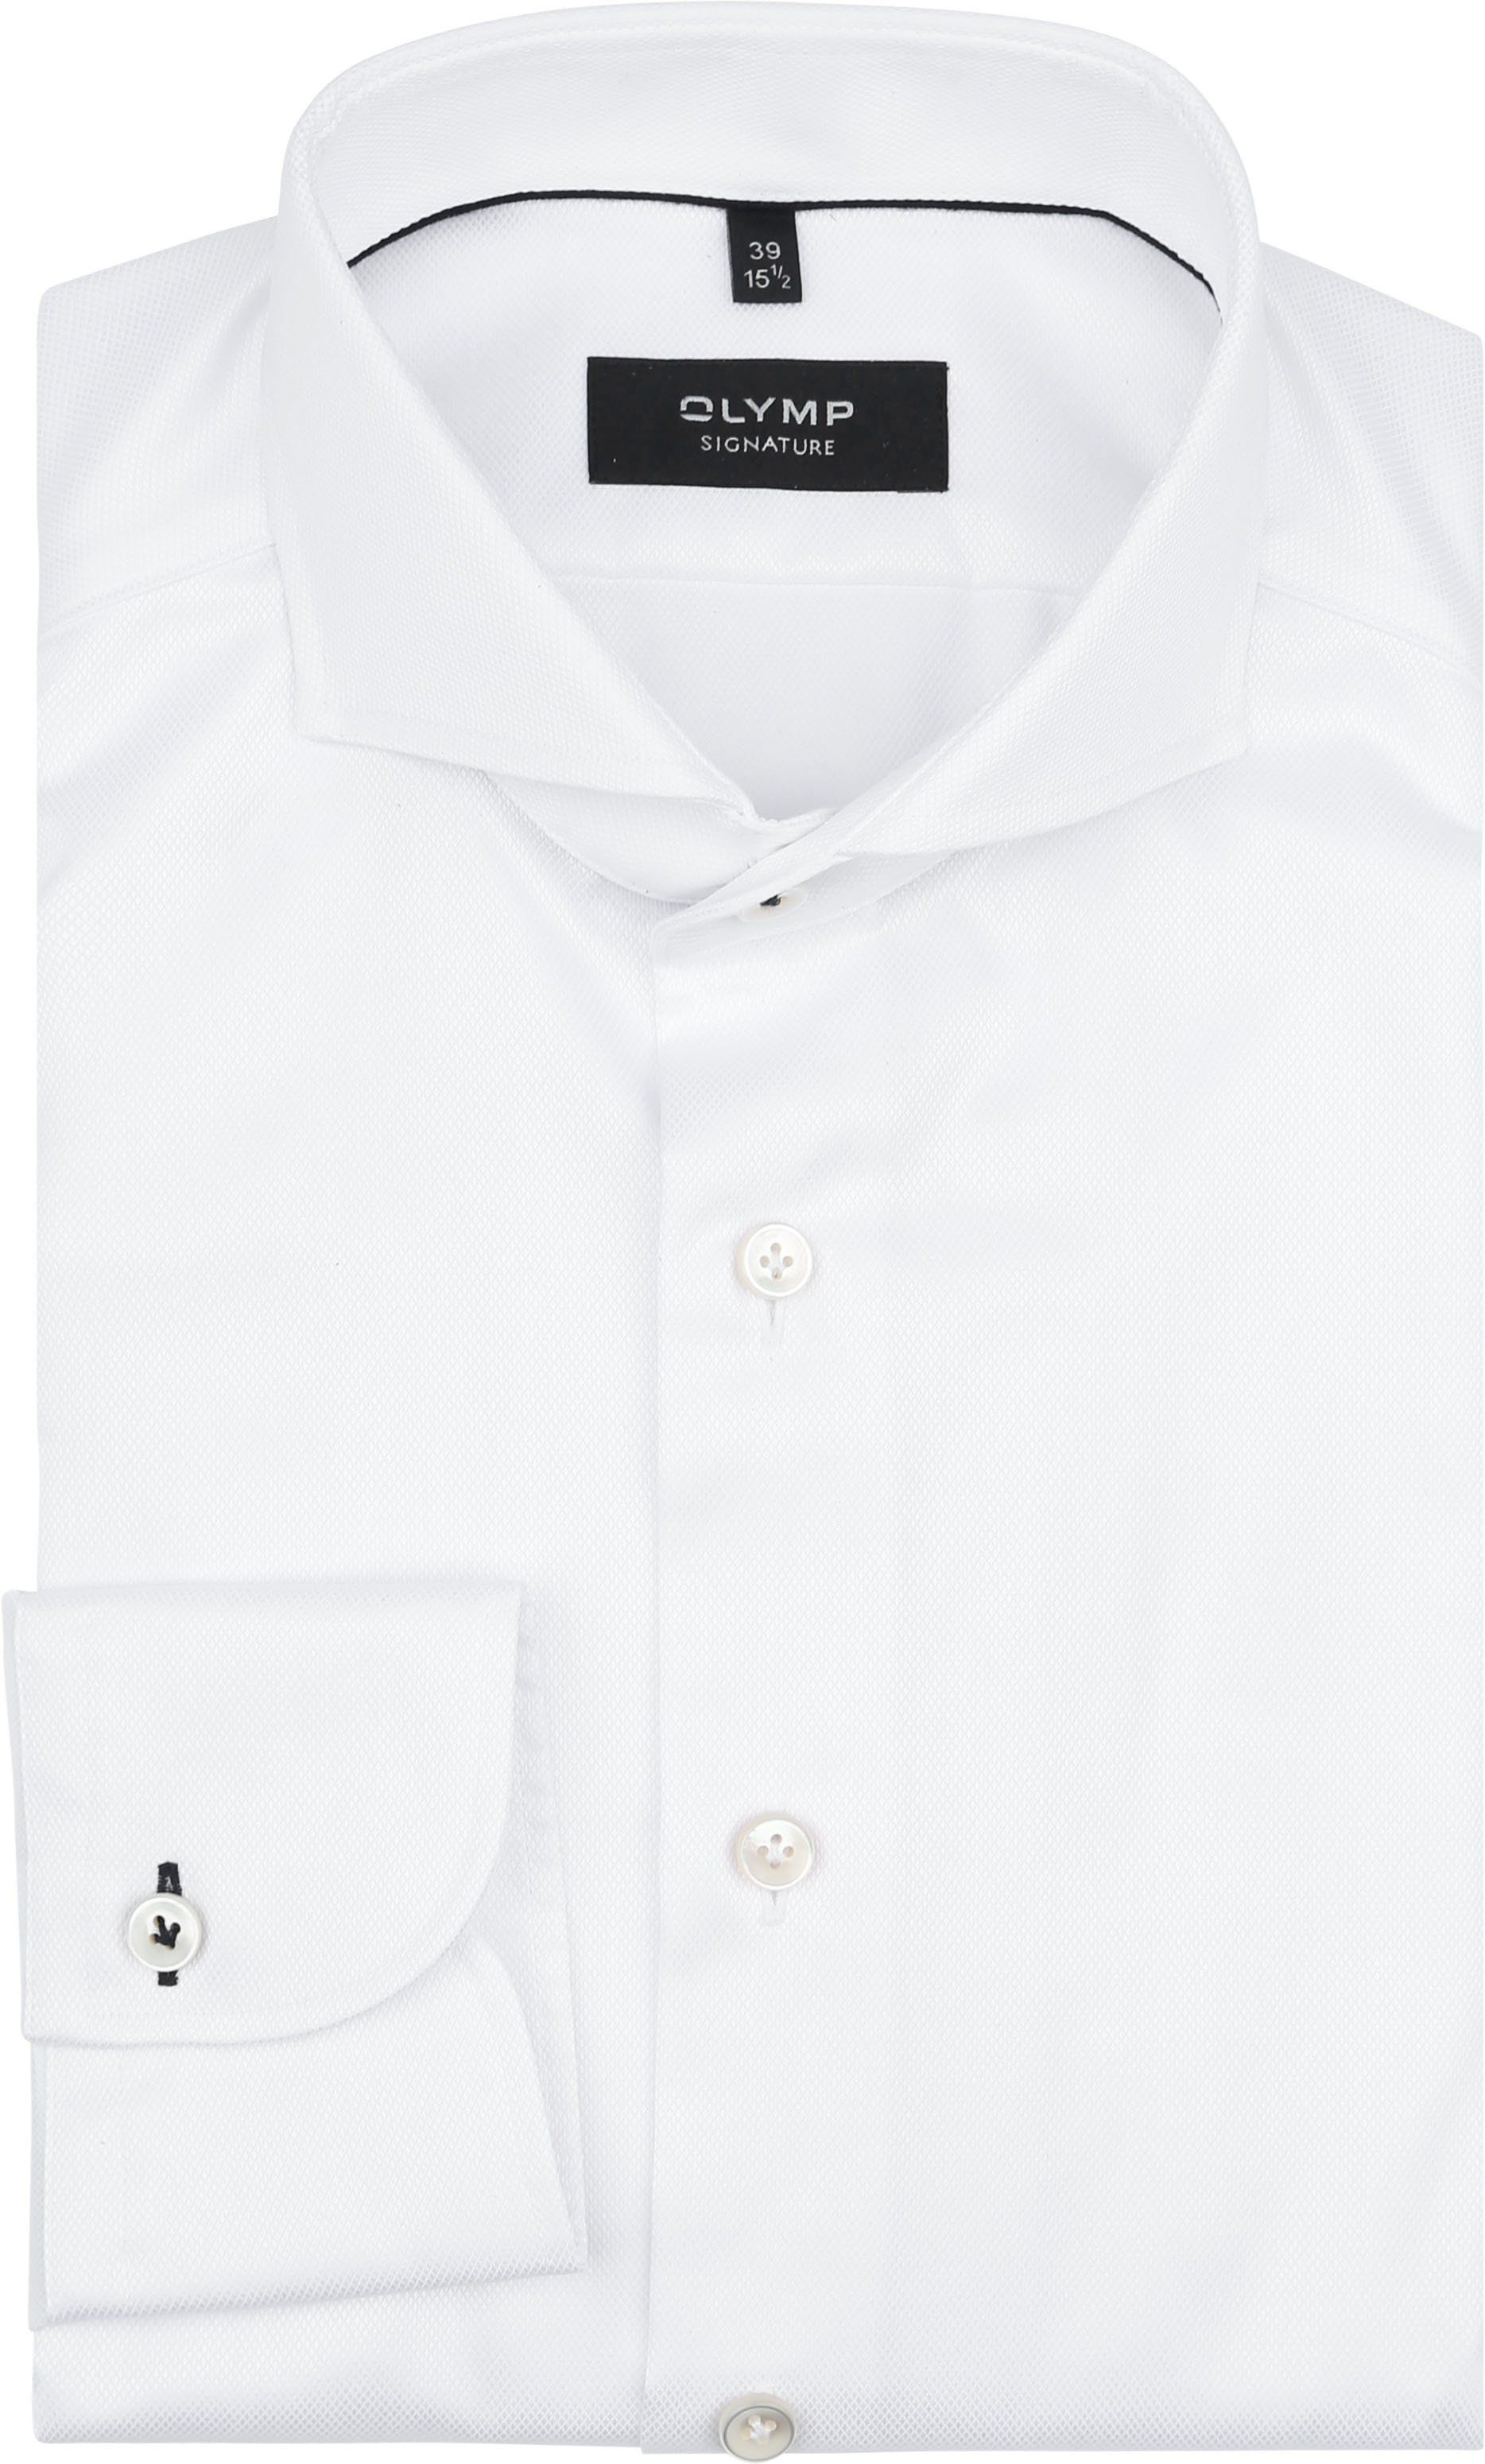 Olymp Signature Shirt White size 46